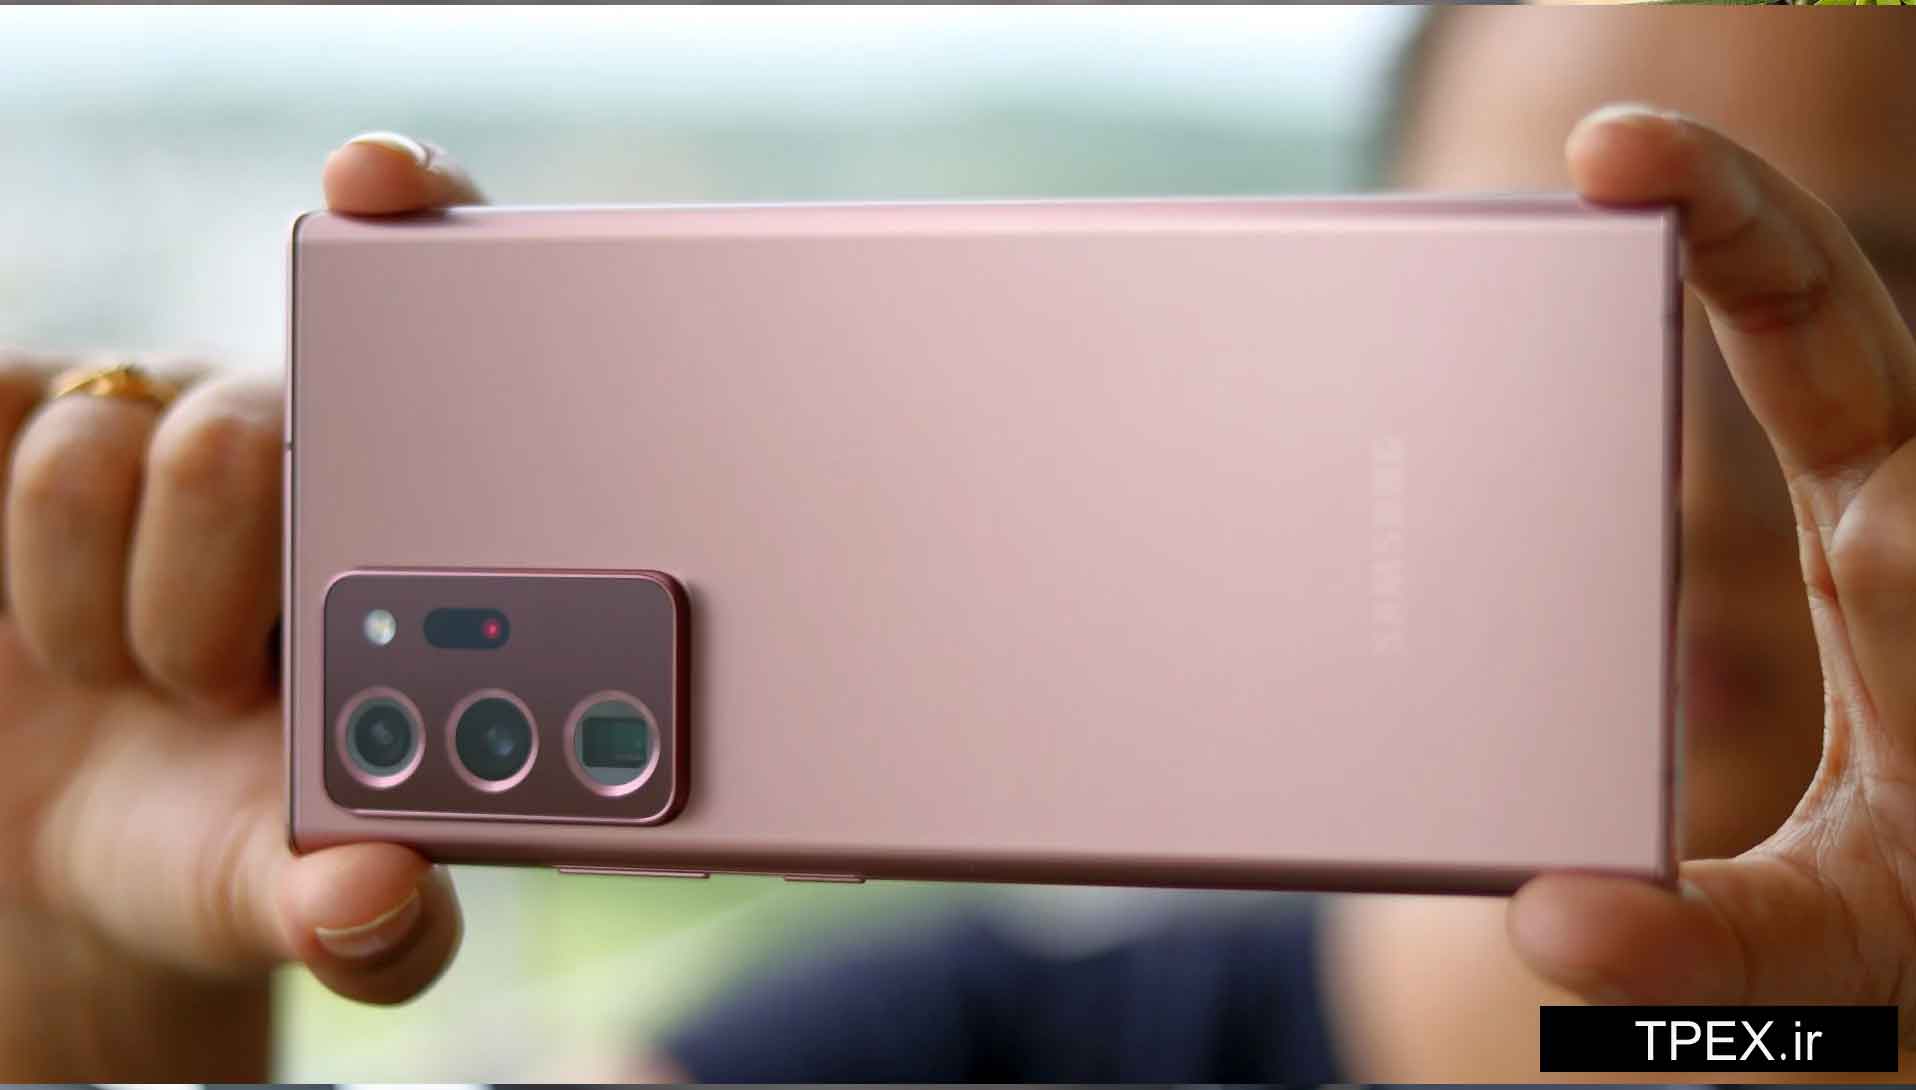 بررسی Galaxy Note 20 Ultra از نظر دوربین